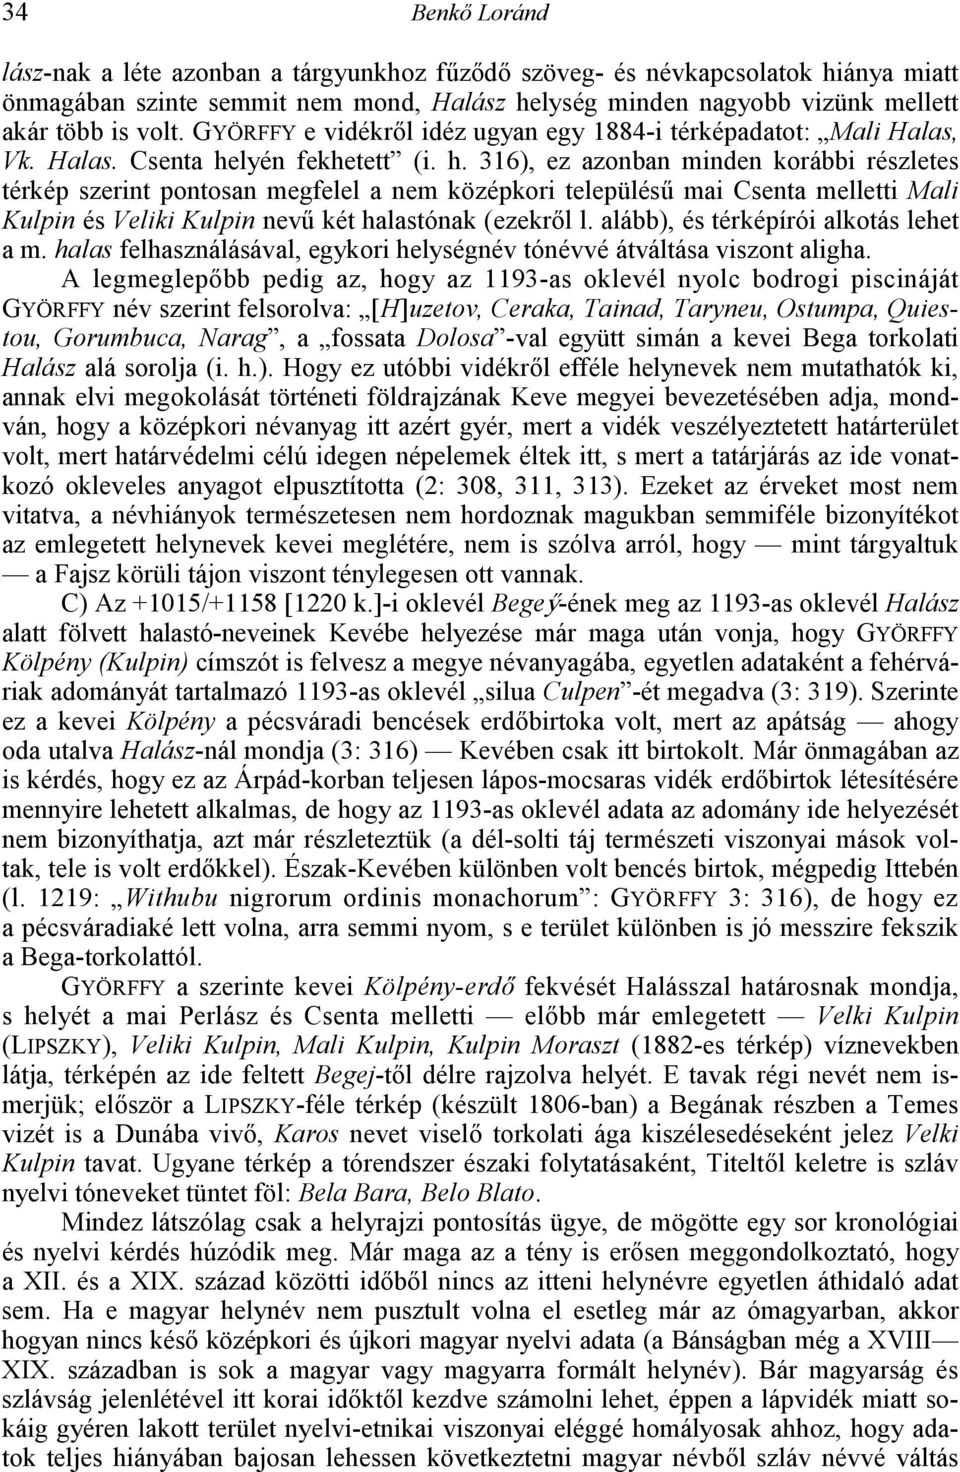 lyén fekhetett (i. h. 316), ez azonban minden korábbi részletes térkép szerint pontosan megfelel a nem középkori település3 mai Csenta melletti Mali Kulpin és Veliki Kulpin nev3 két halastónak (ezekr!